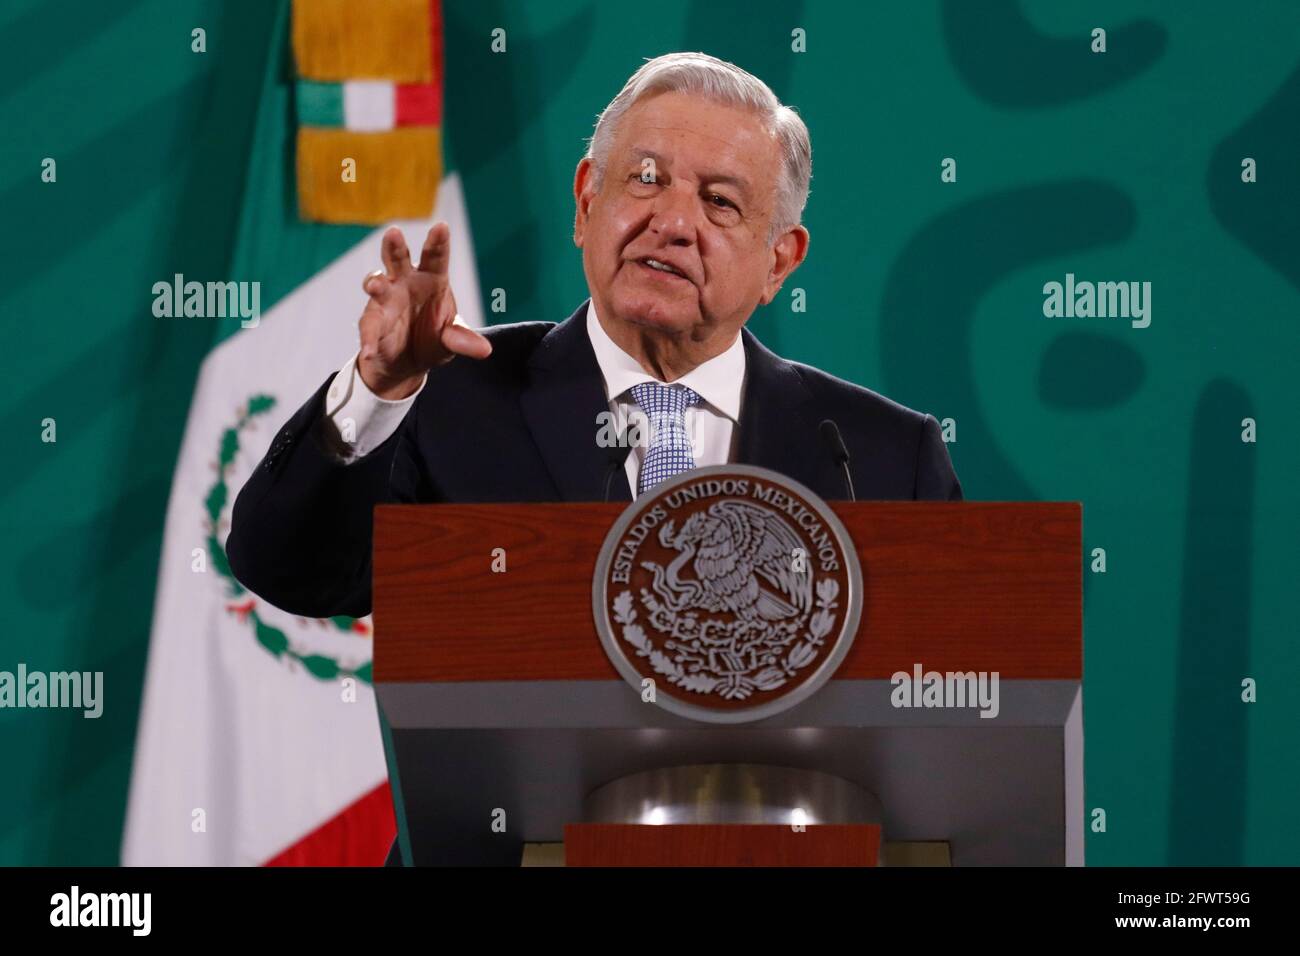 Nicht exklusiv: MEXIKO-STADT, MEXIKO - 24. MAI: Mexikos Präsident Andres Manuel Lopez Obrador, gestikulierend, während er während seines traditionellen Daily m spricht Stockfoto